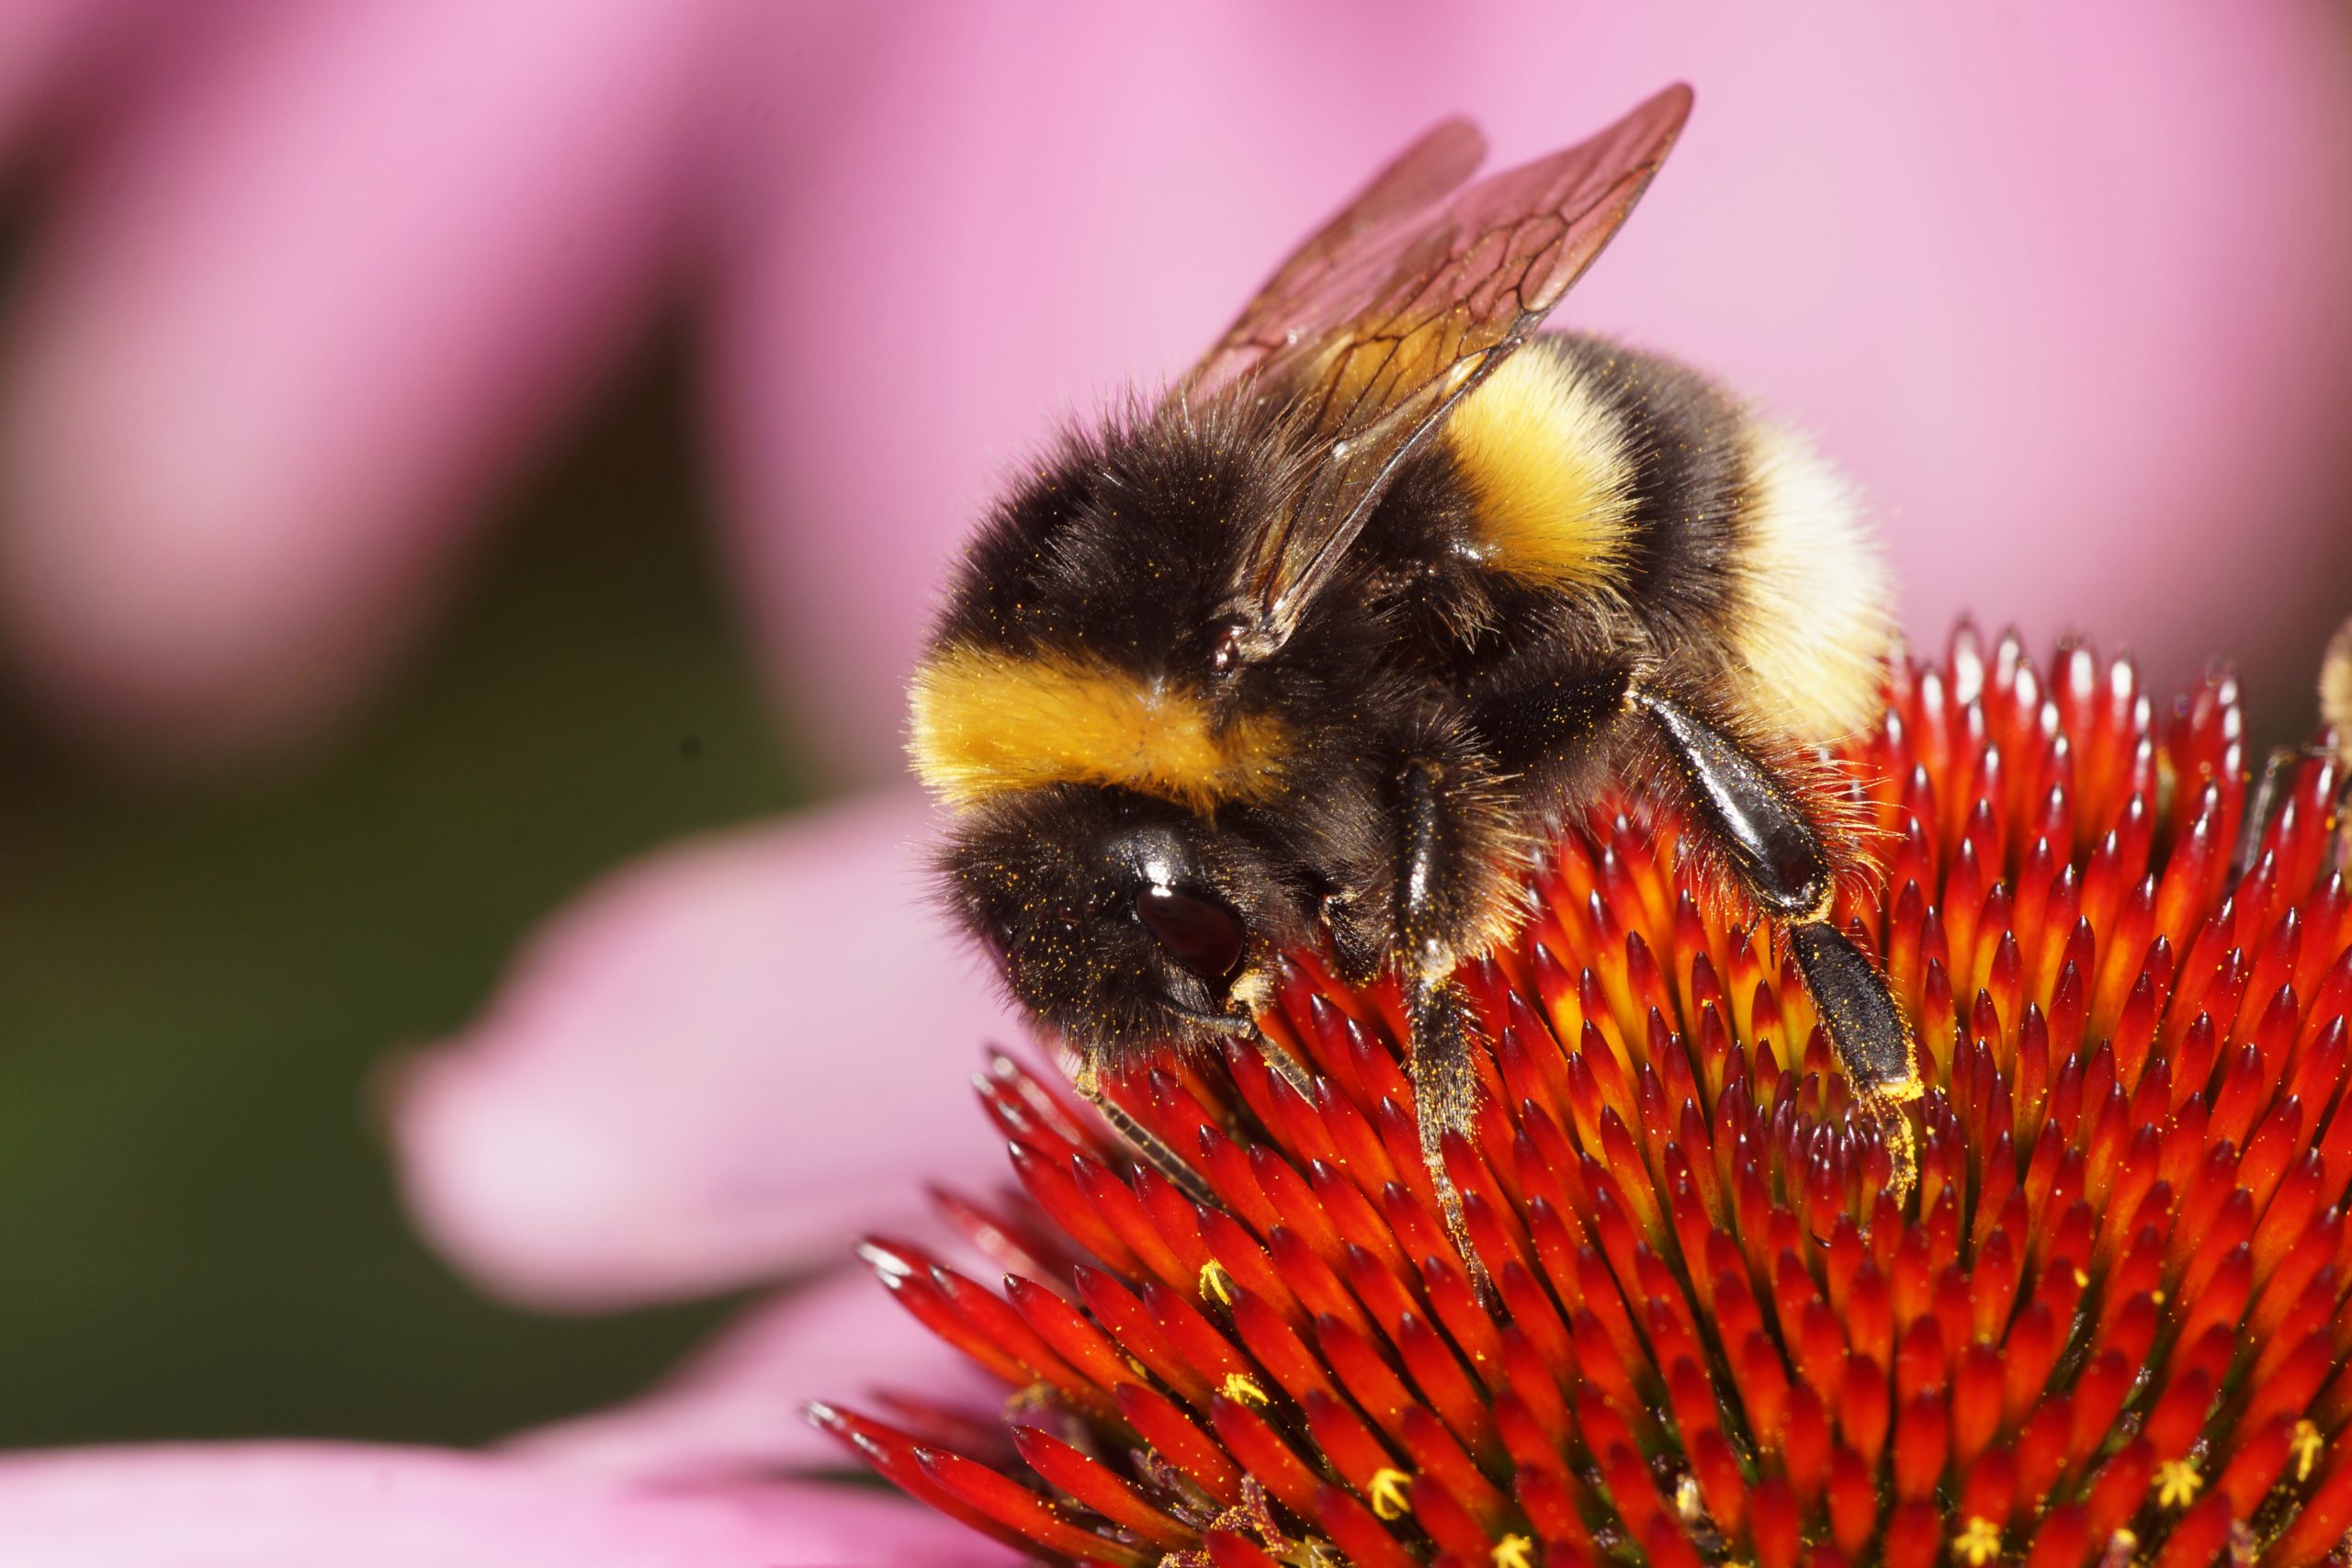 A close-up photograph of a Bumblebee. Depositphotos.